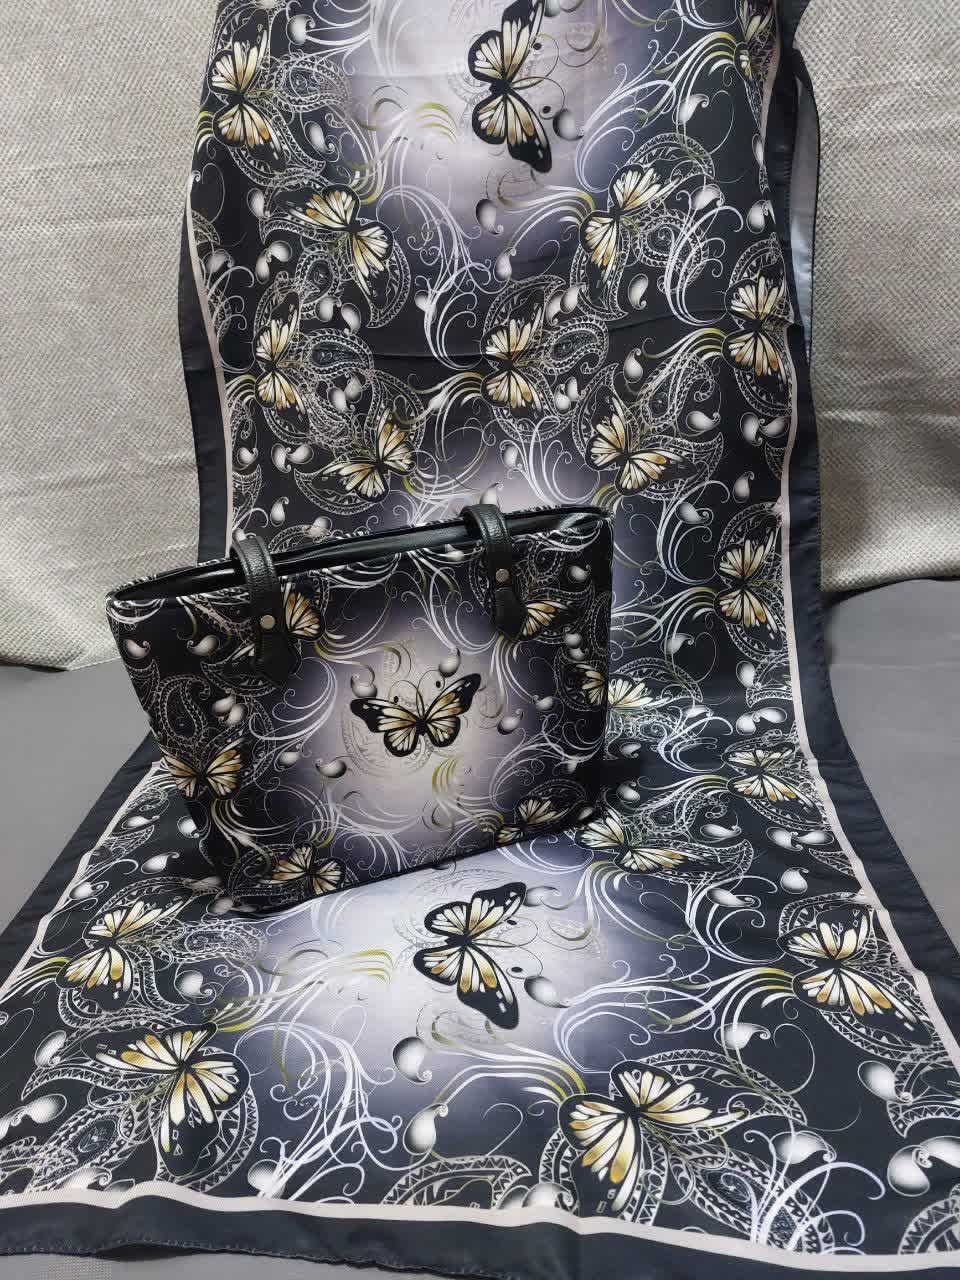 ست کیف و شال زنانه طرح پروانه شیک با کیف مستطیلی با ارسال رایگان کد na134